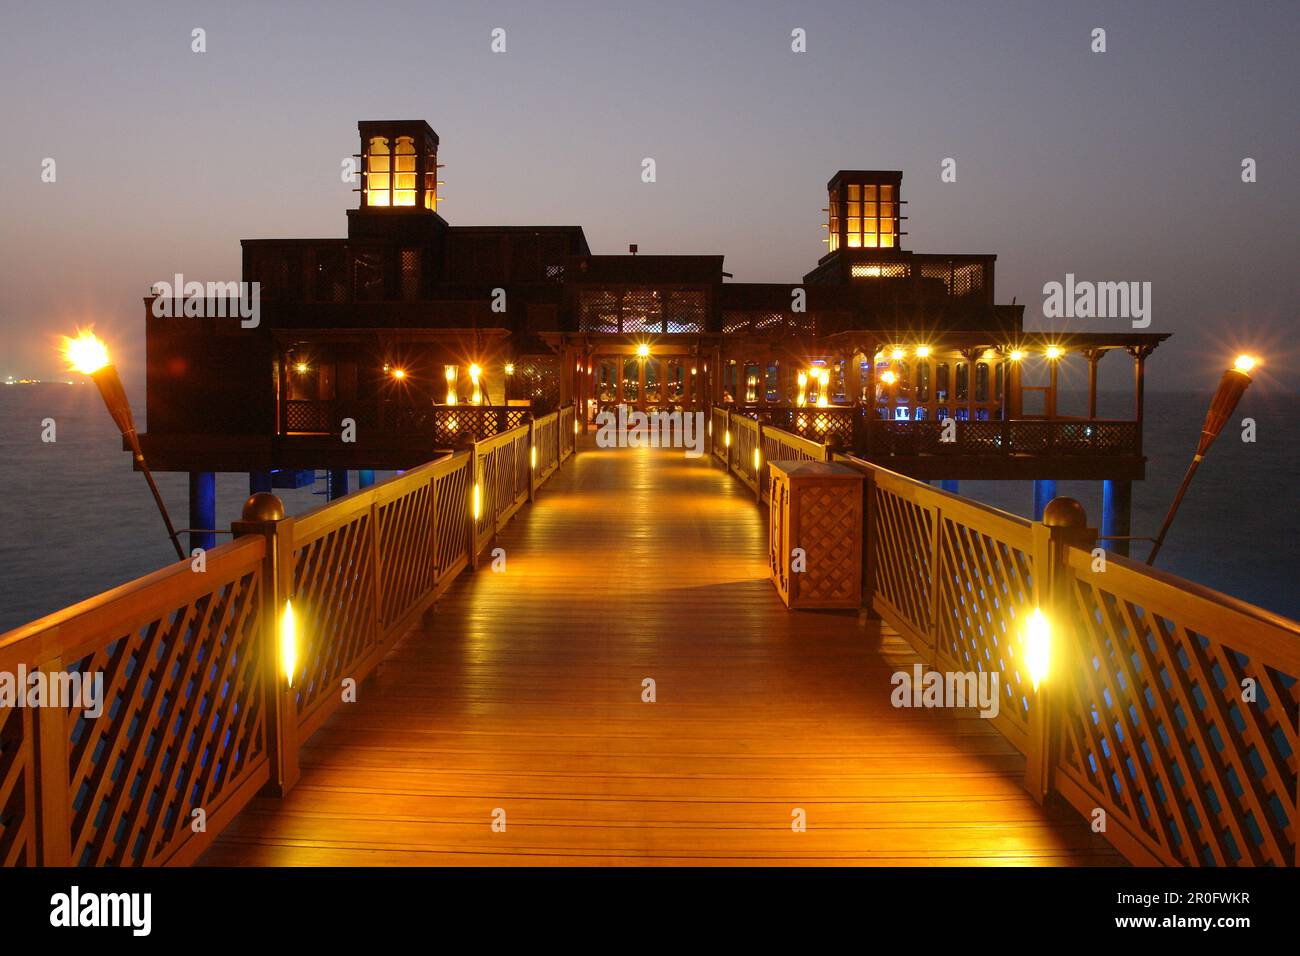 Al Qasr hotel pier restaurant in the evening light, Madinat Jumeirah, Dubai, United Arab Emirates, UAE Stock Photo